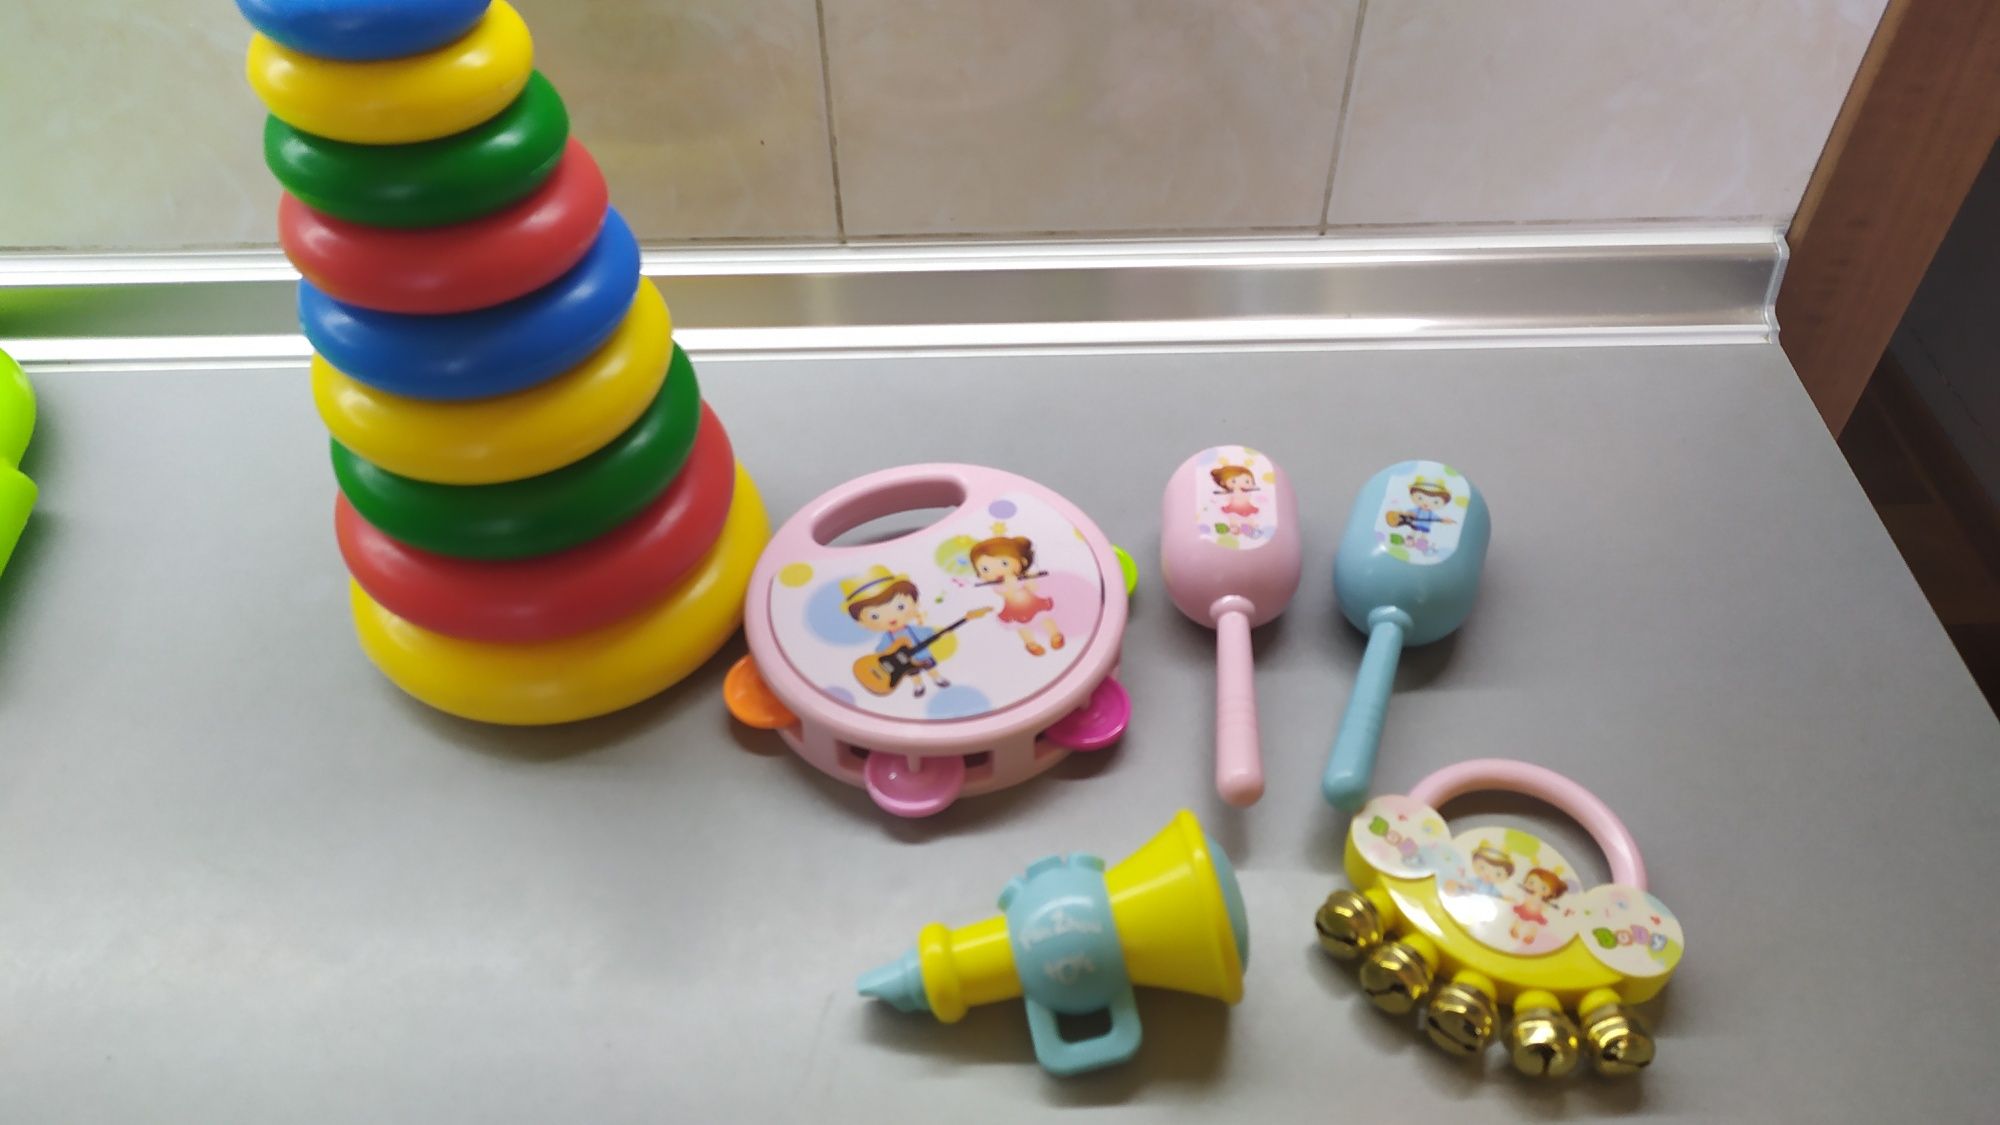 Іграшки для дитини до року,брязкальця,каталка